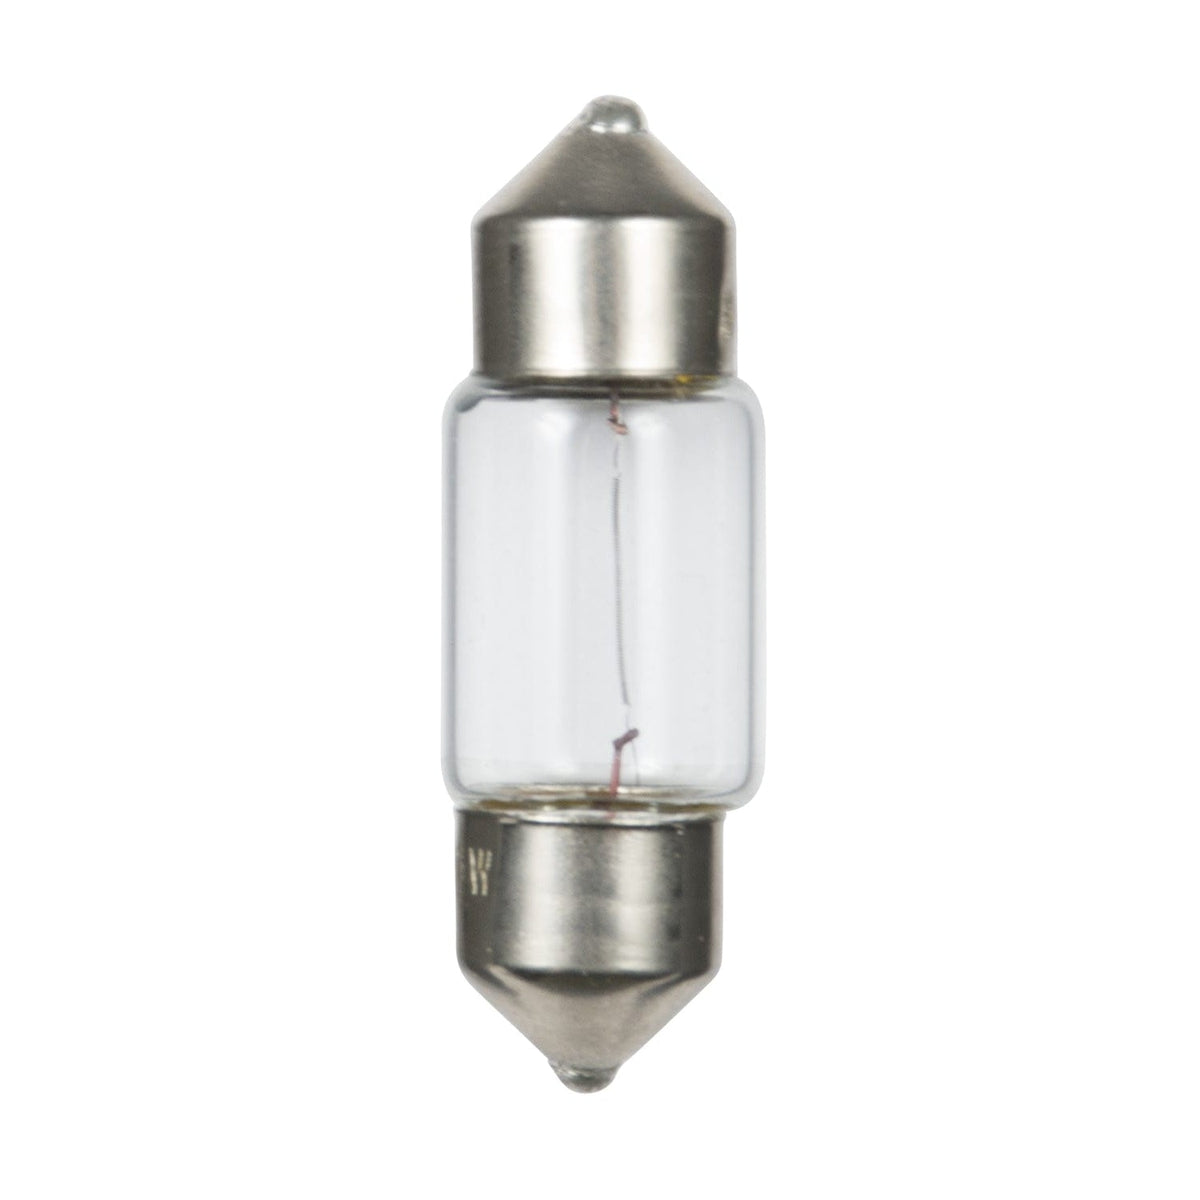 Ancor Qualifies for Free Shipping Ancor 12v 10w Festoon Light Bulb 2-pk #529104